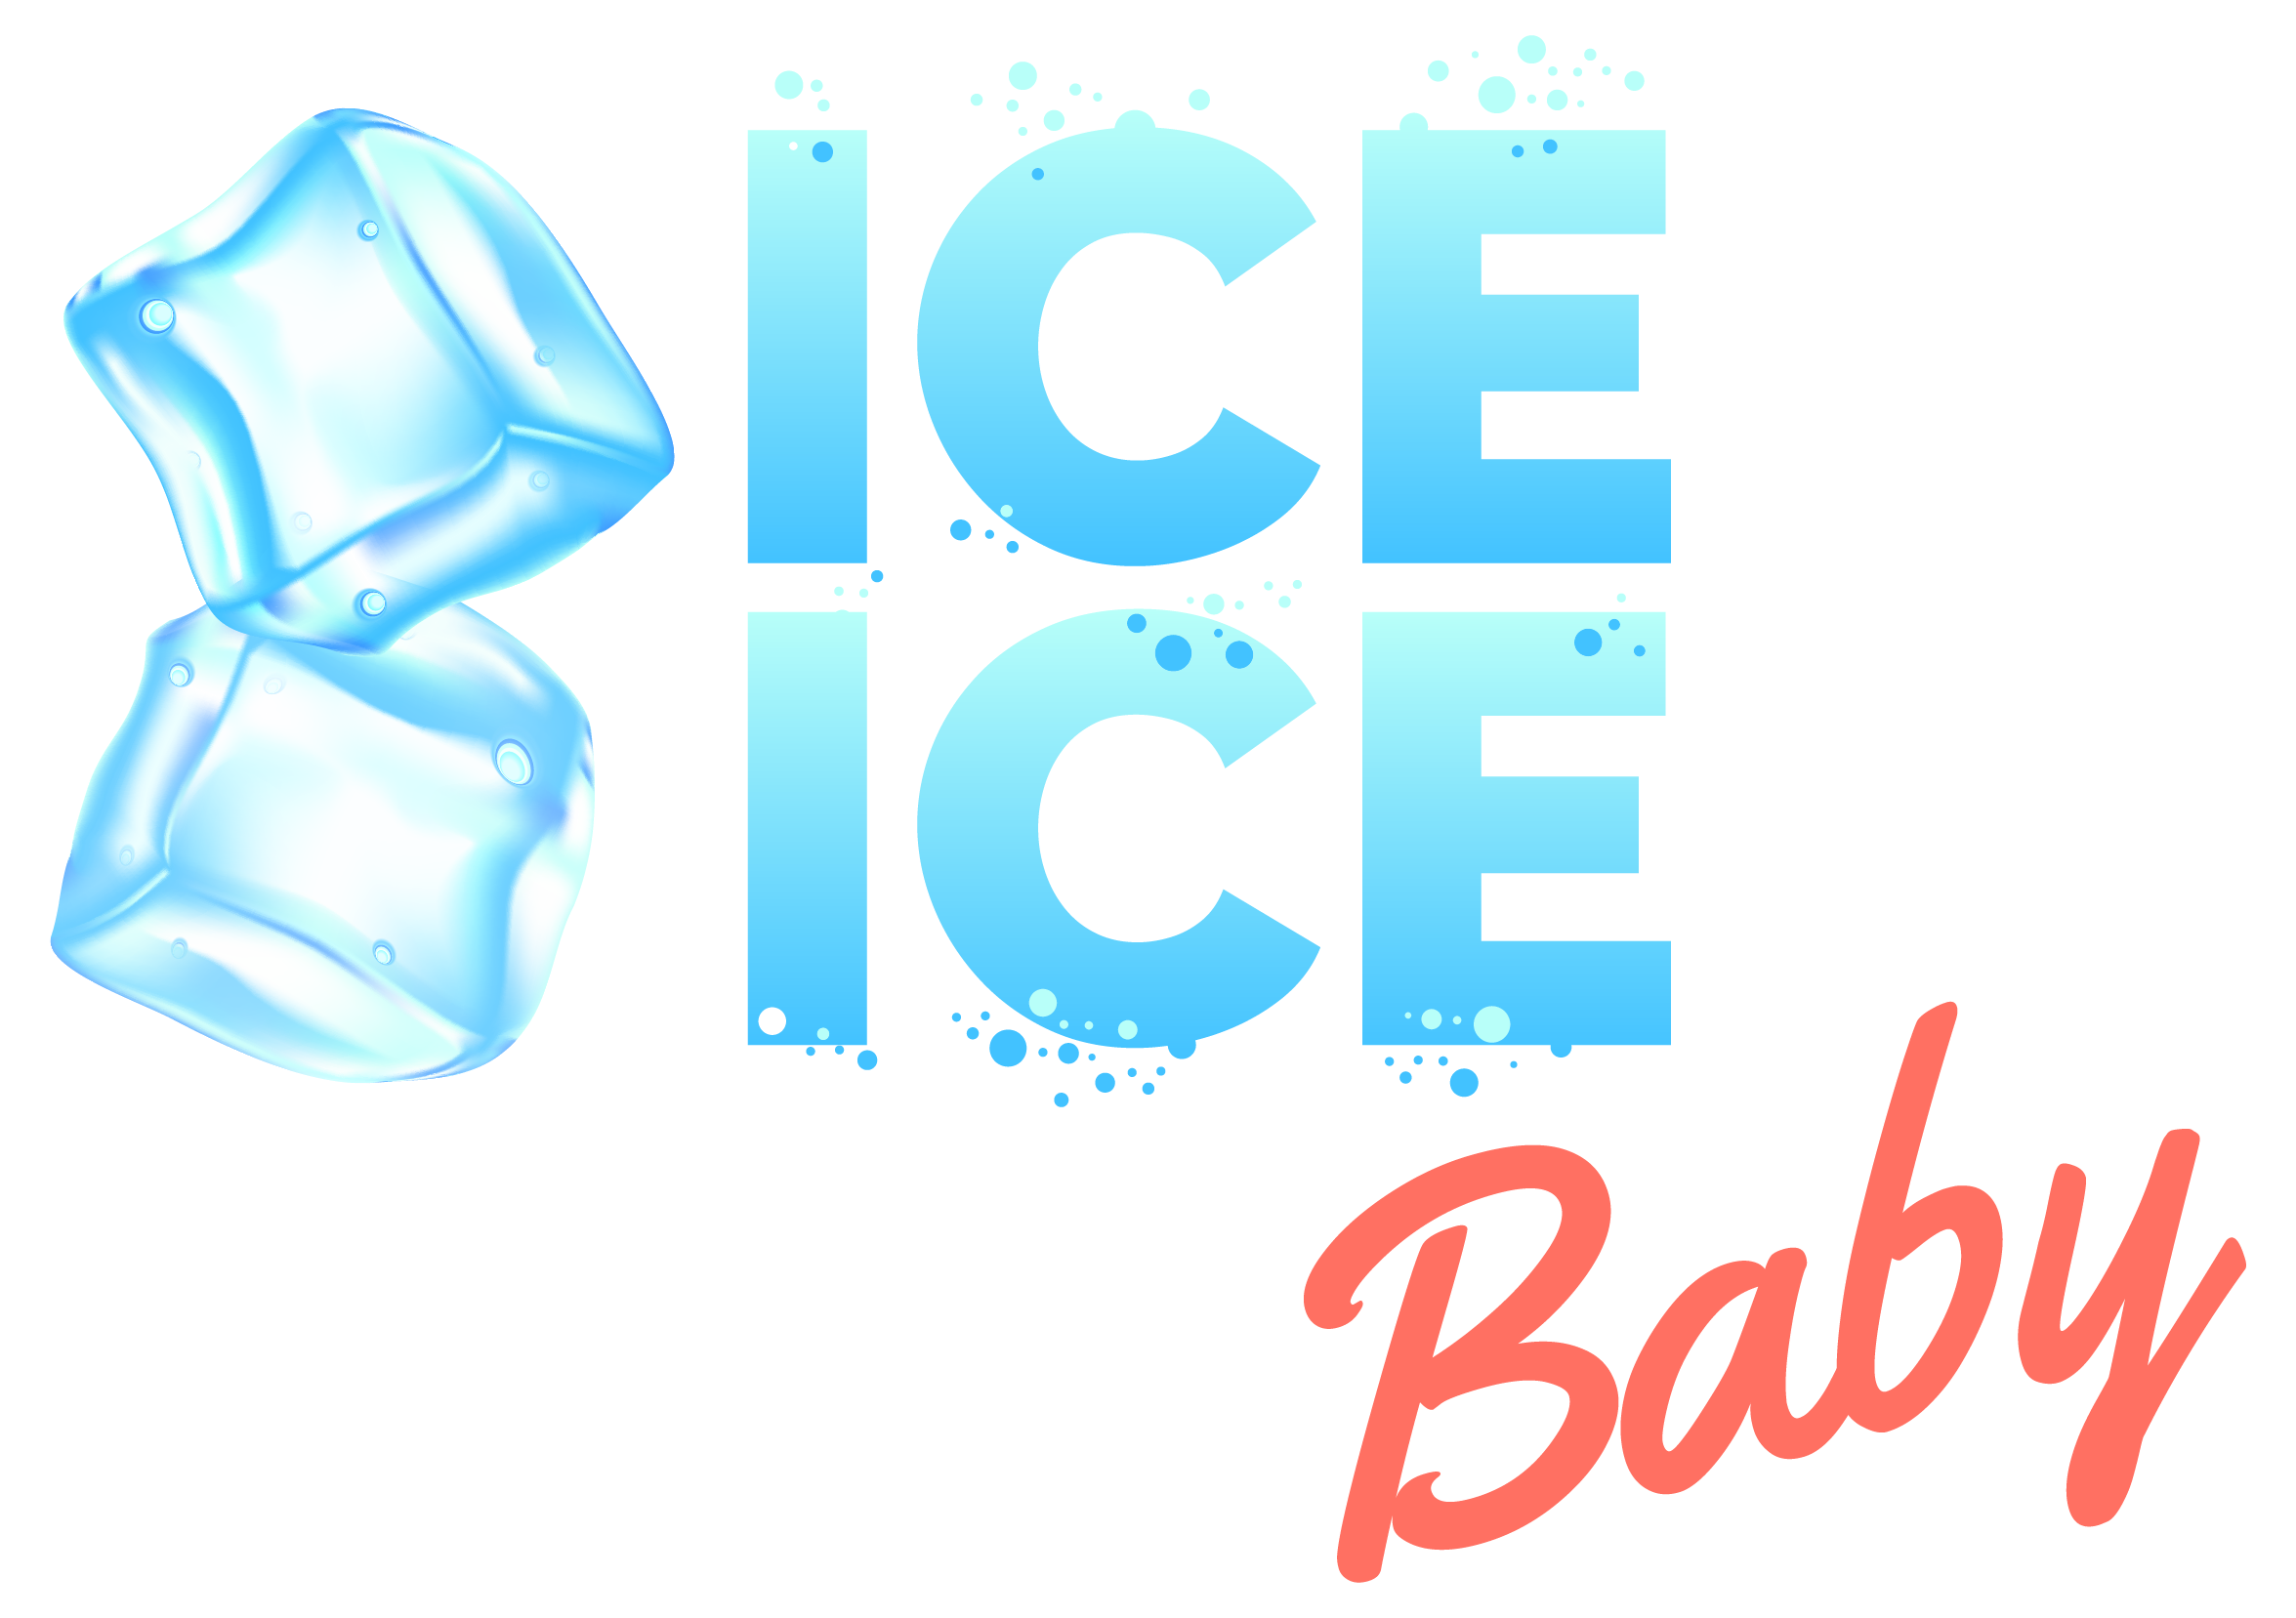 ICE ICE Baby